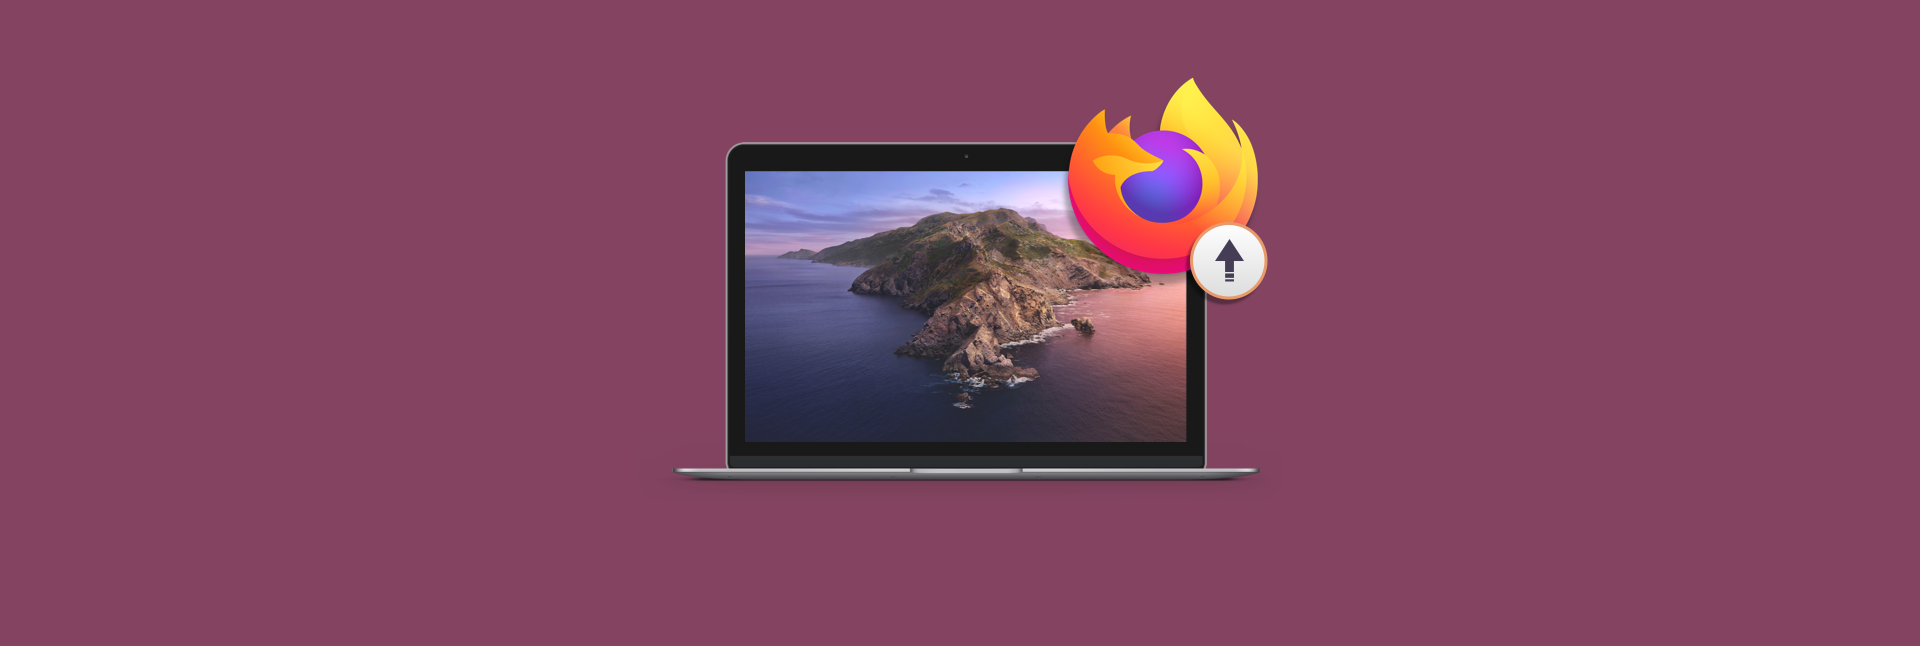 firefox for mac update breaks install